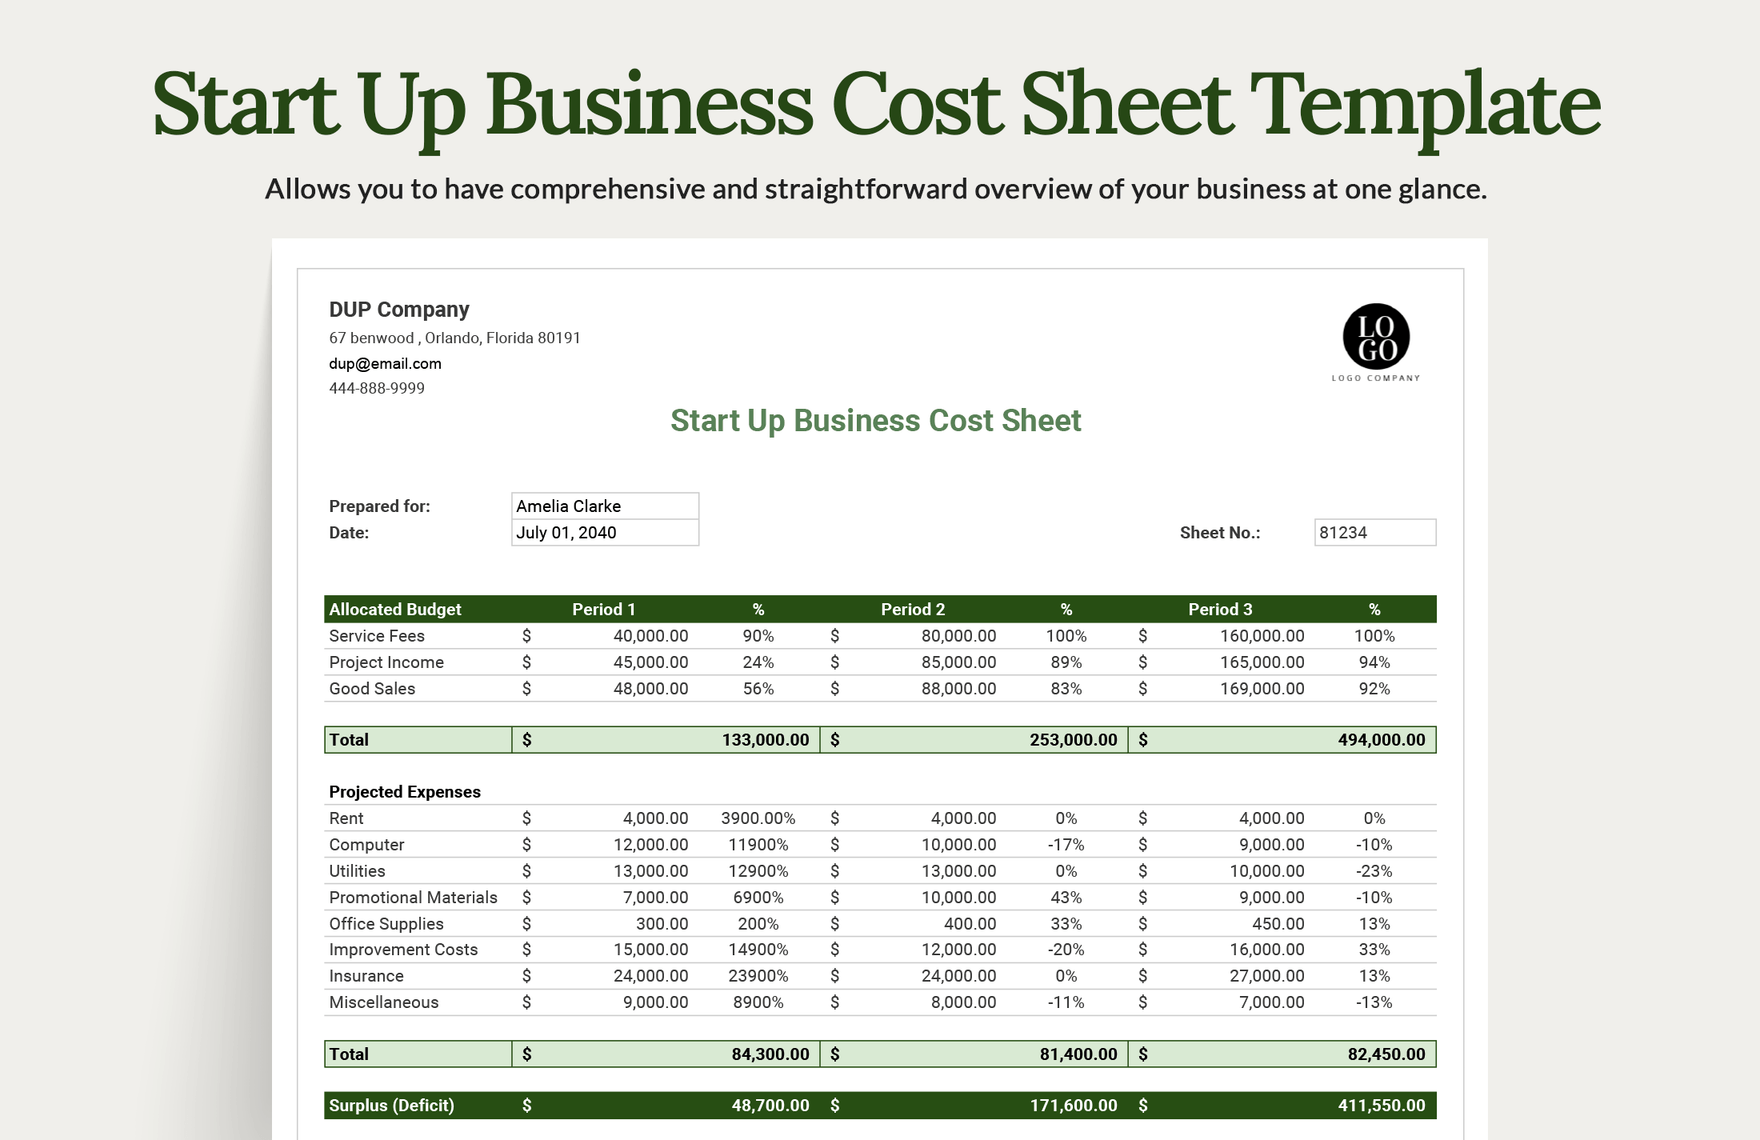 Start Up Business Cost Sheet Template